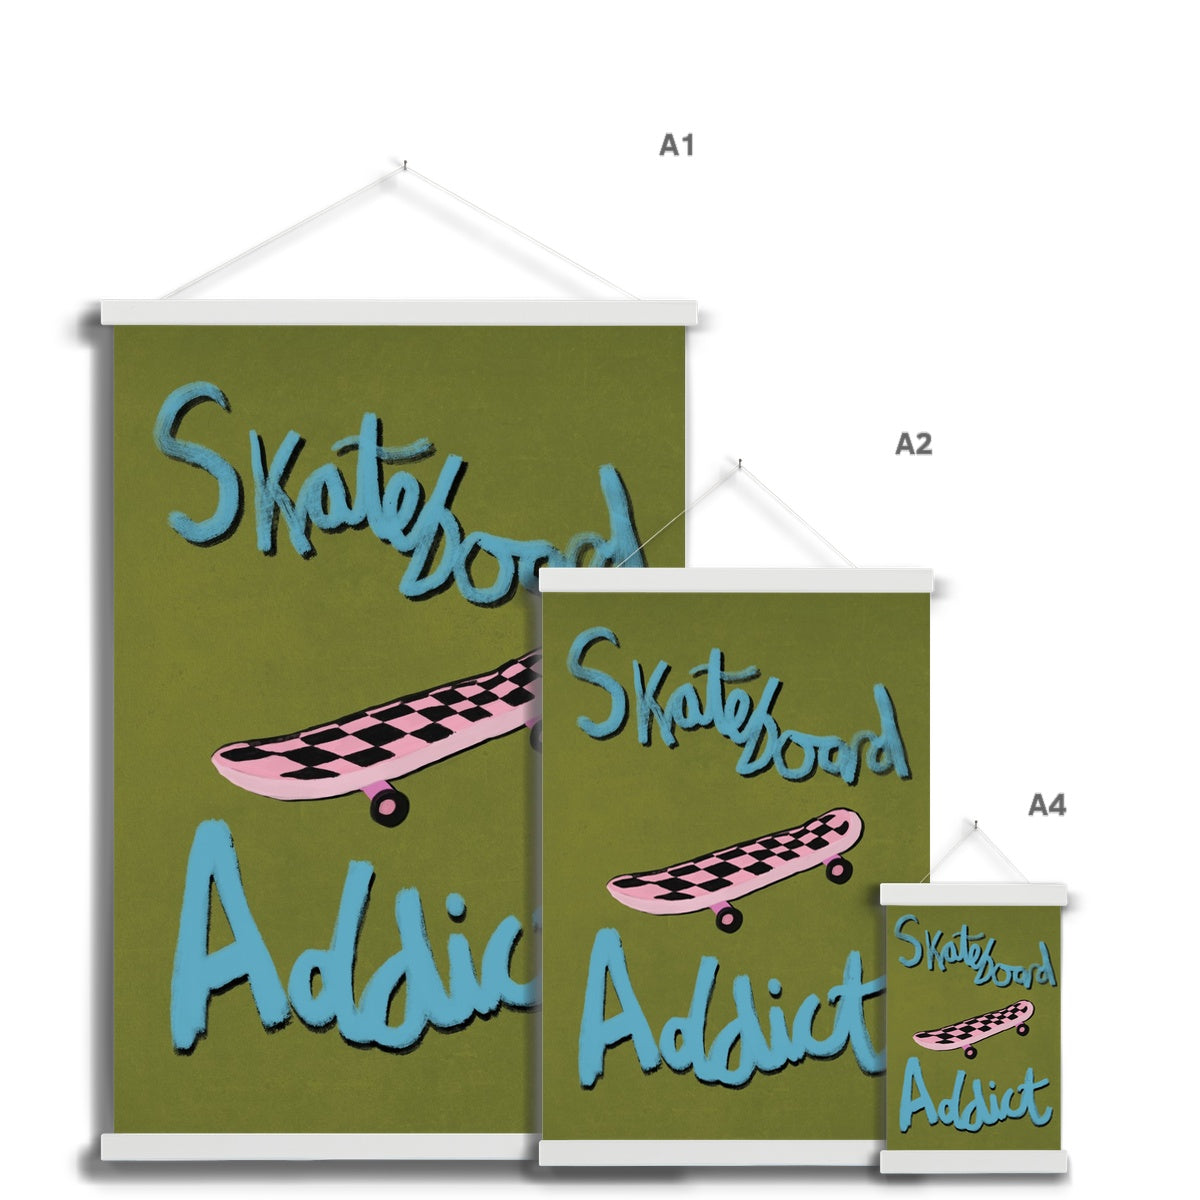 Skateboard Addict - Olive Green, Blue, Pink Fine Art Print with Hanger